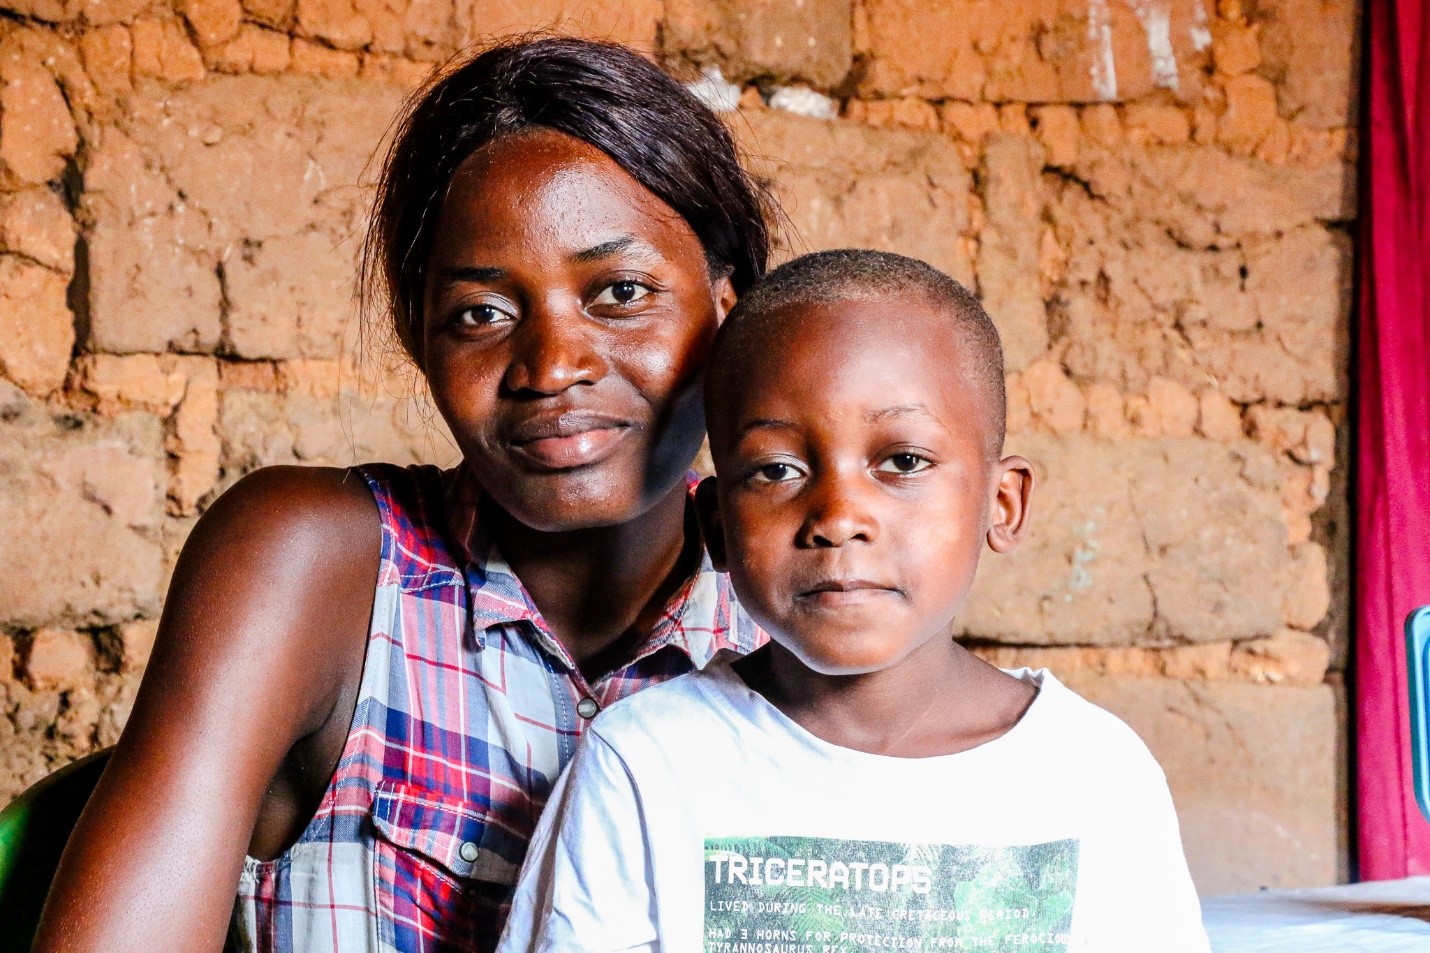 Com o financiamento do Fundo Global, o PNUD apoia os serviços de saúde comunitária em Angola para combater a tuberculose.Foto:PNUD Angola